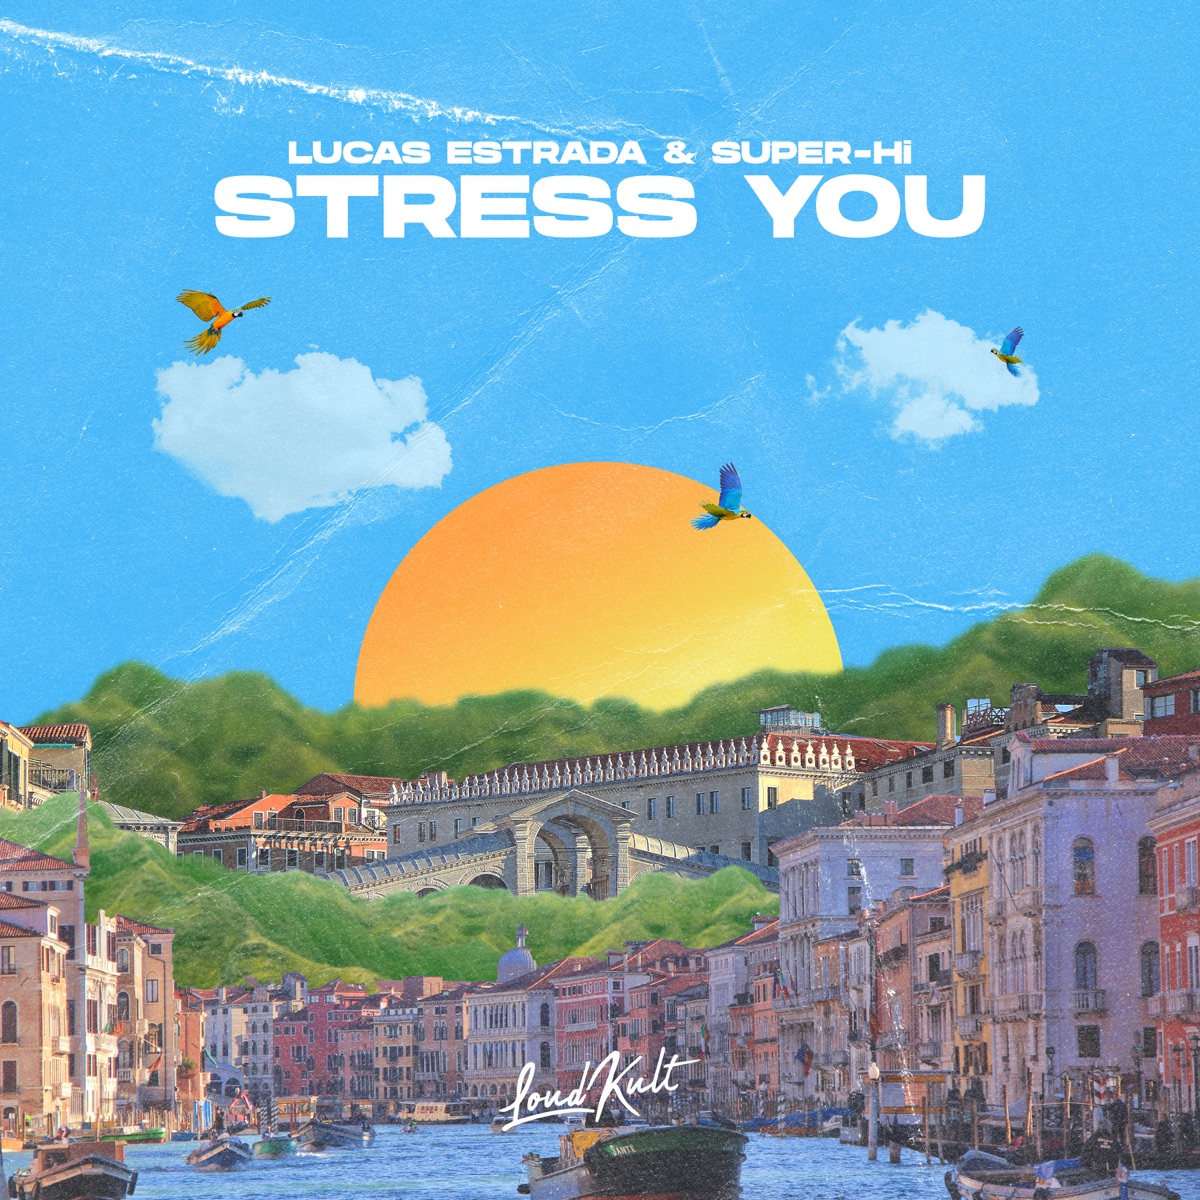 Lucas Estrada & SUPER-Hi — Stress You cover artwork